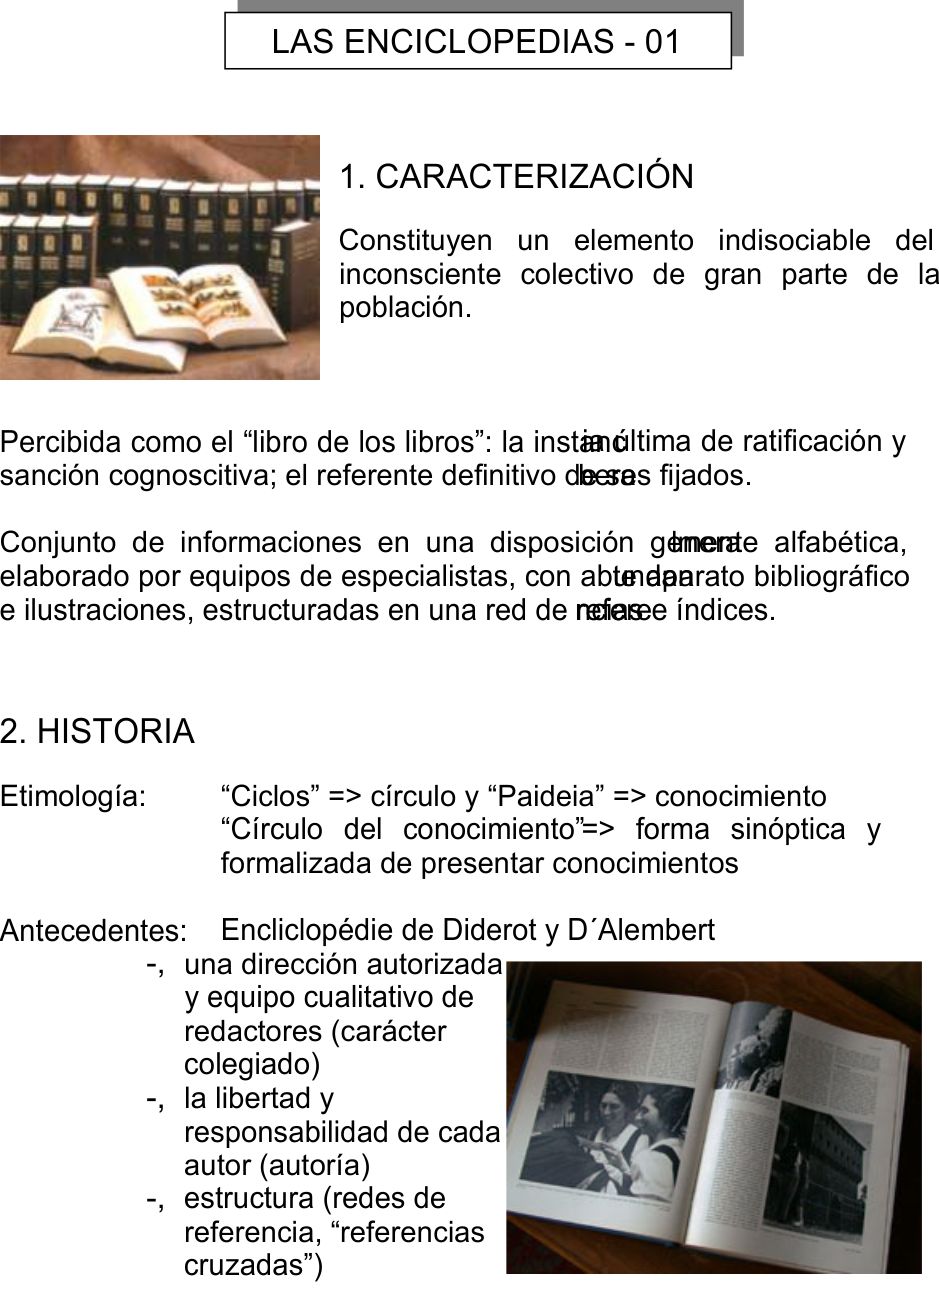 Las Enciclopedias